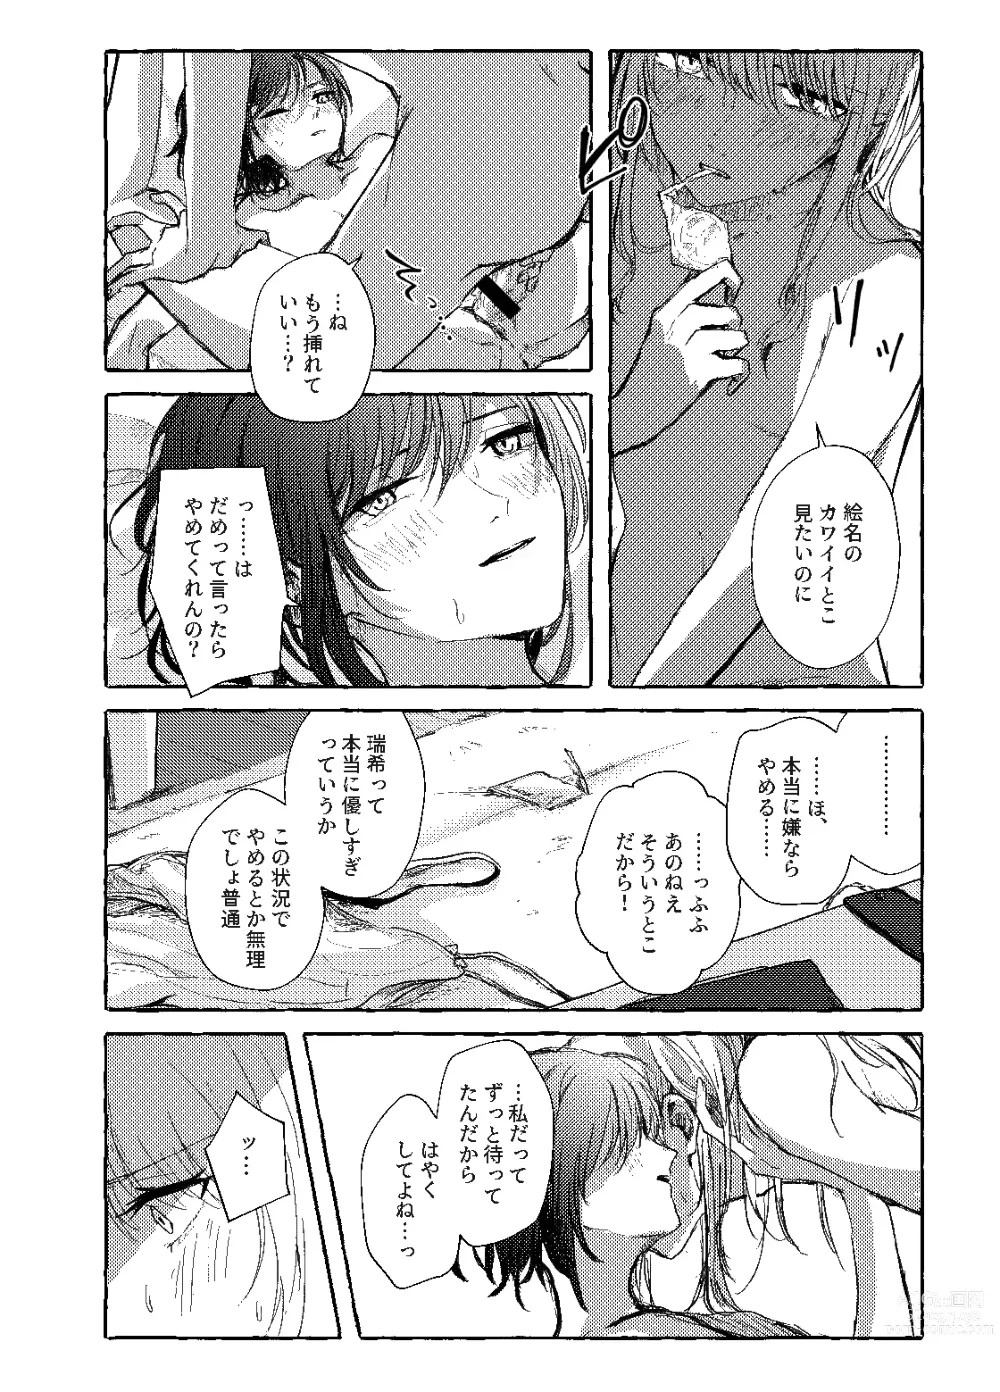 Page 23 of doujinshi Hakoniwa no Naka no Kimi